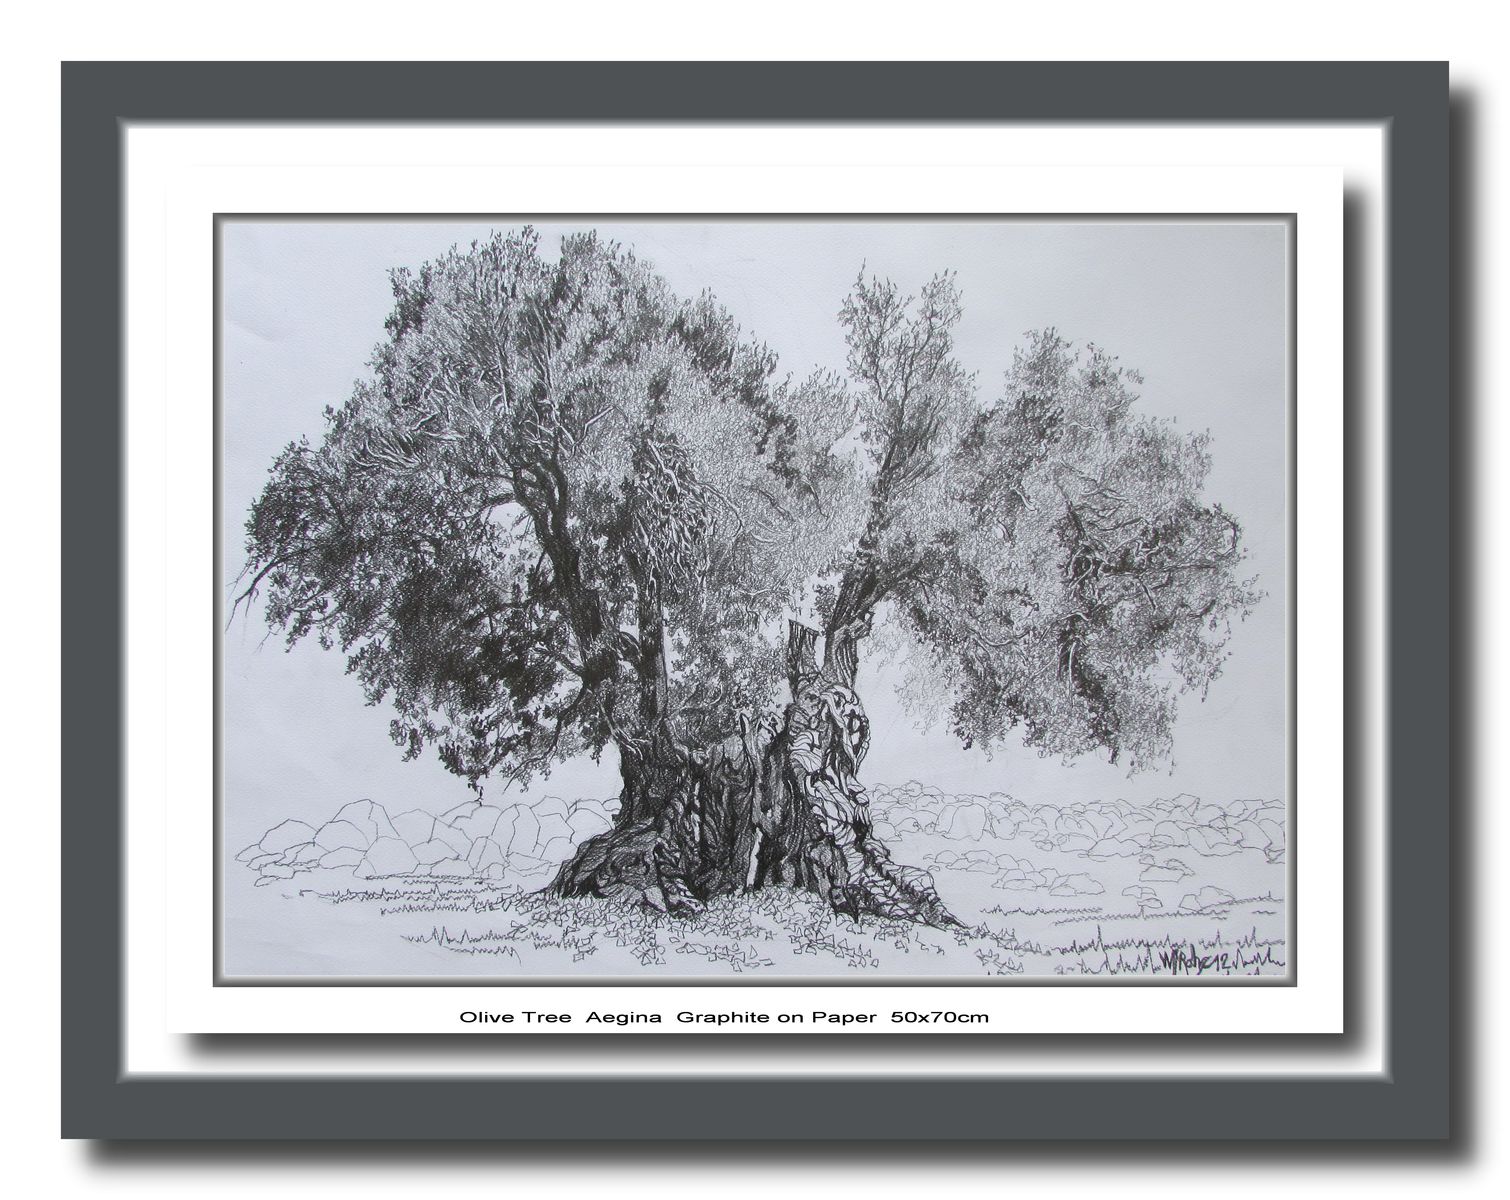 Olive Tree, Aegina